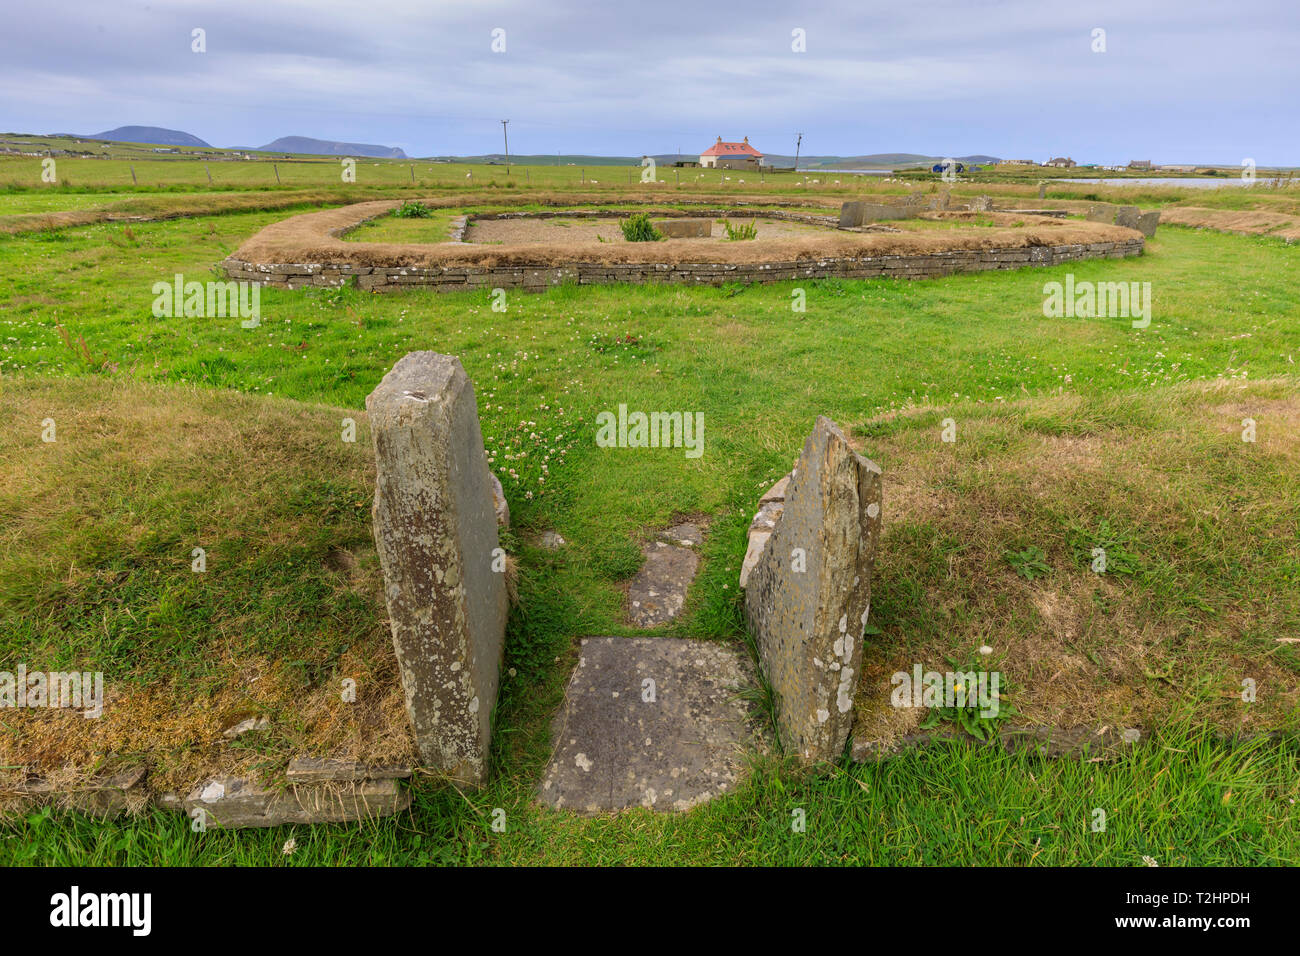 8 Structure de Ness de Shetlands site archéologique dans les îles Orcades, Ecosse, Europe Banque D'Images